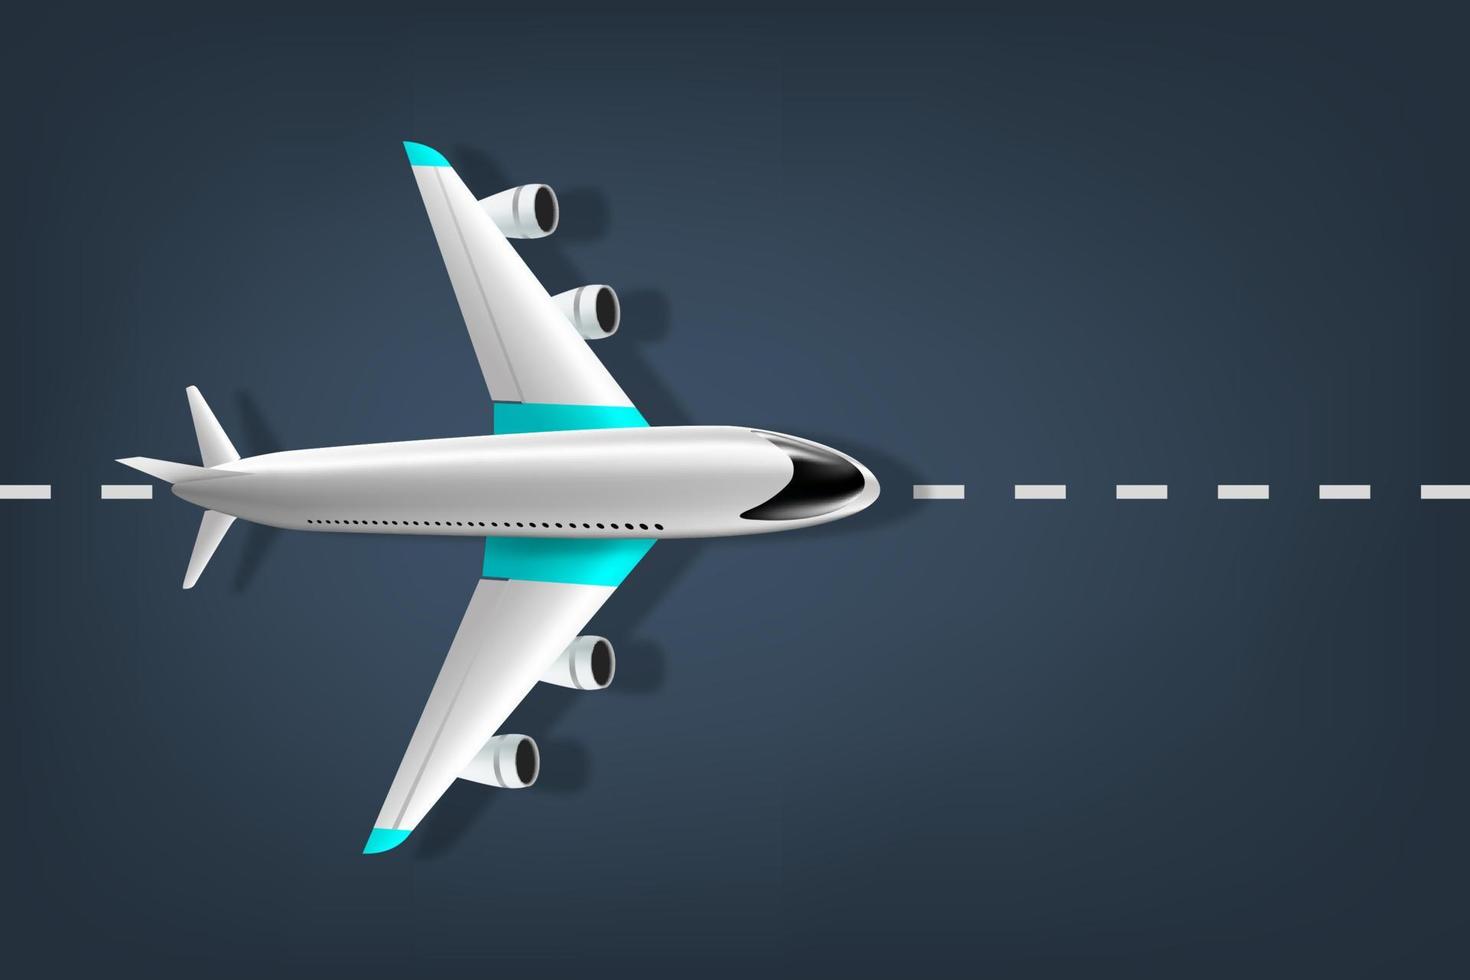 realistisk bild av ett flygplan från ovan, realistiskt 3d-flygplan. passagerarplan på banan vektor